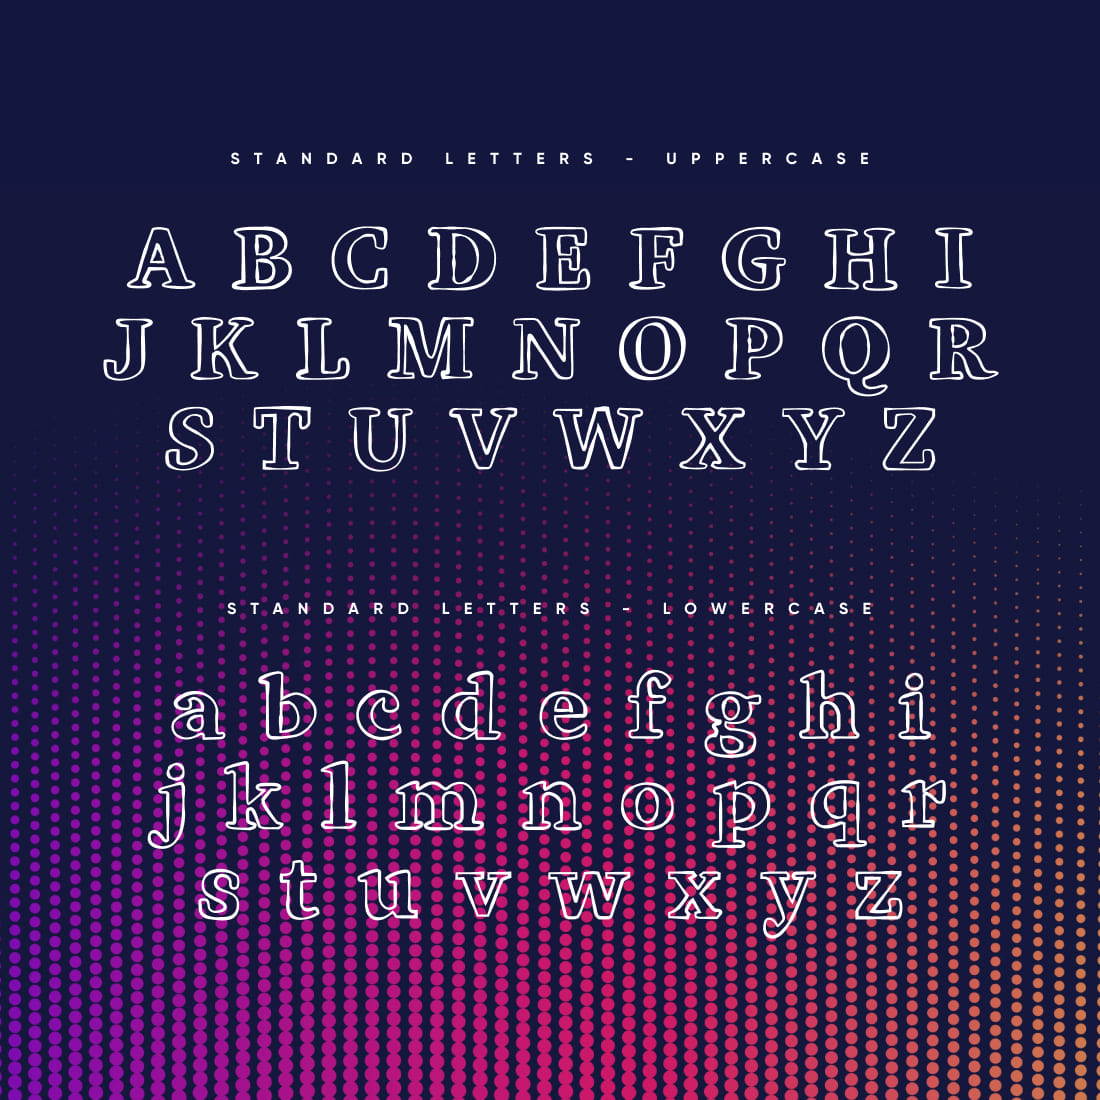 Imply outline serif font alphabet preview.